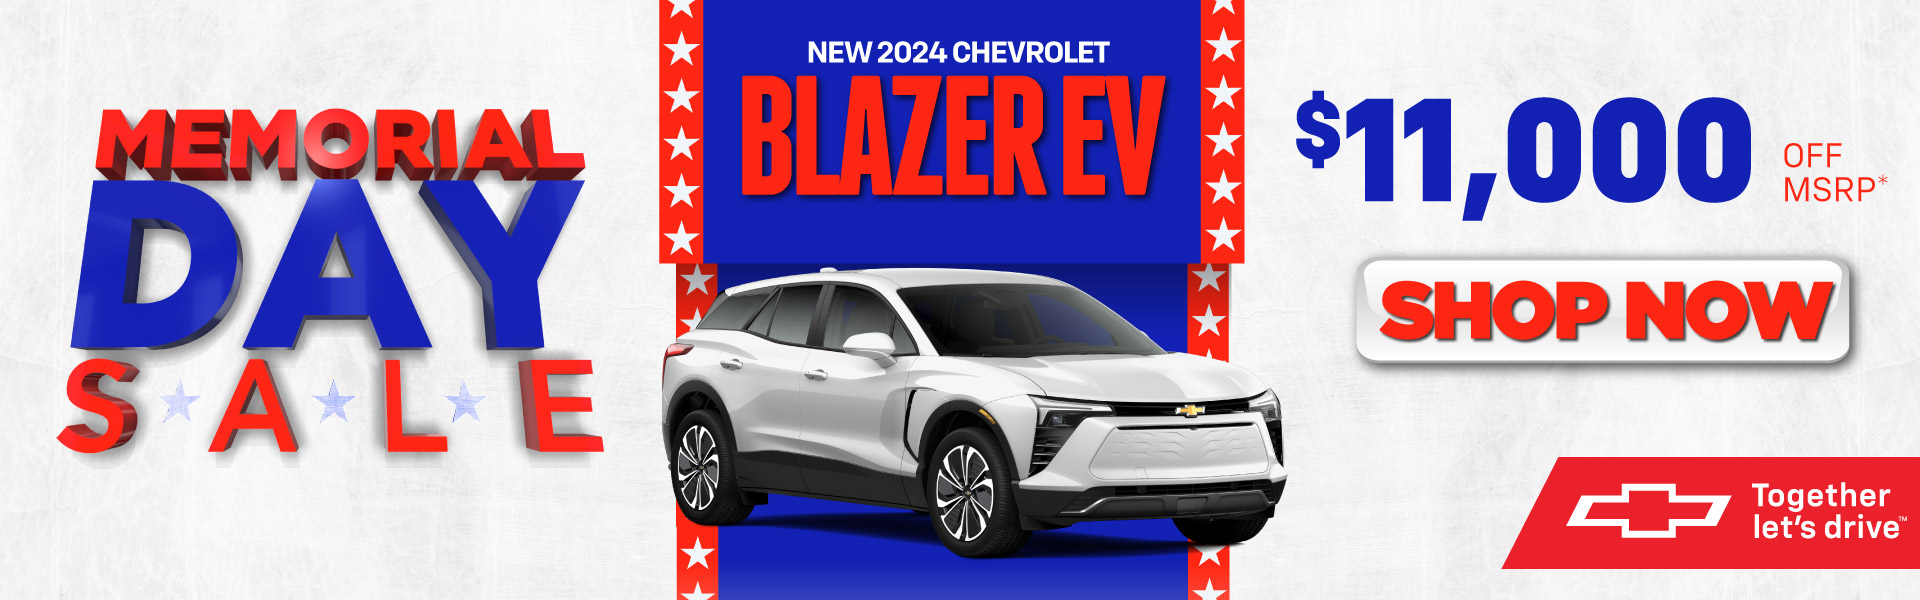 2024 Chevrolet Blazer EV - $11,000 Off MSRP* - Shop Now